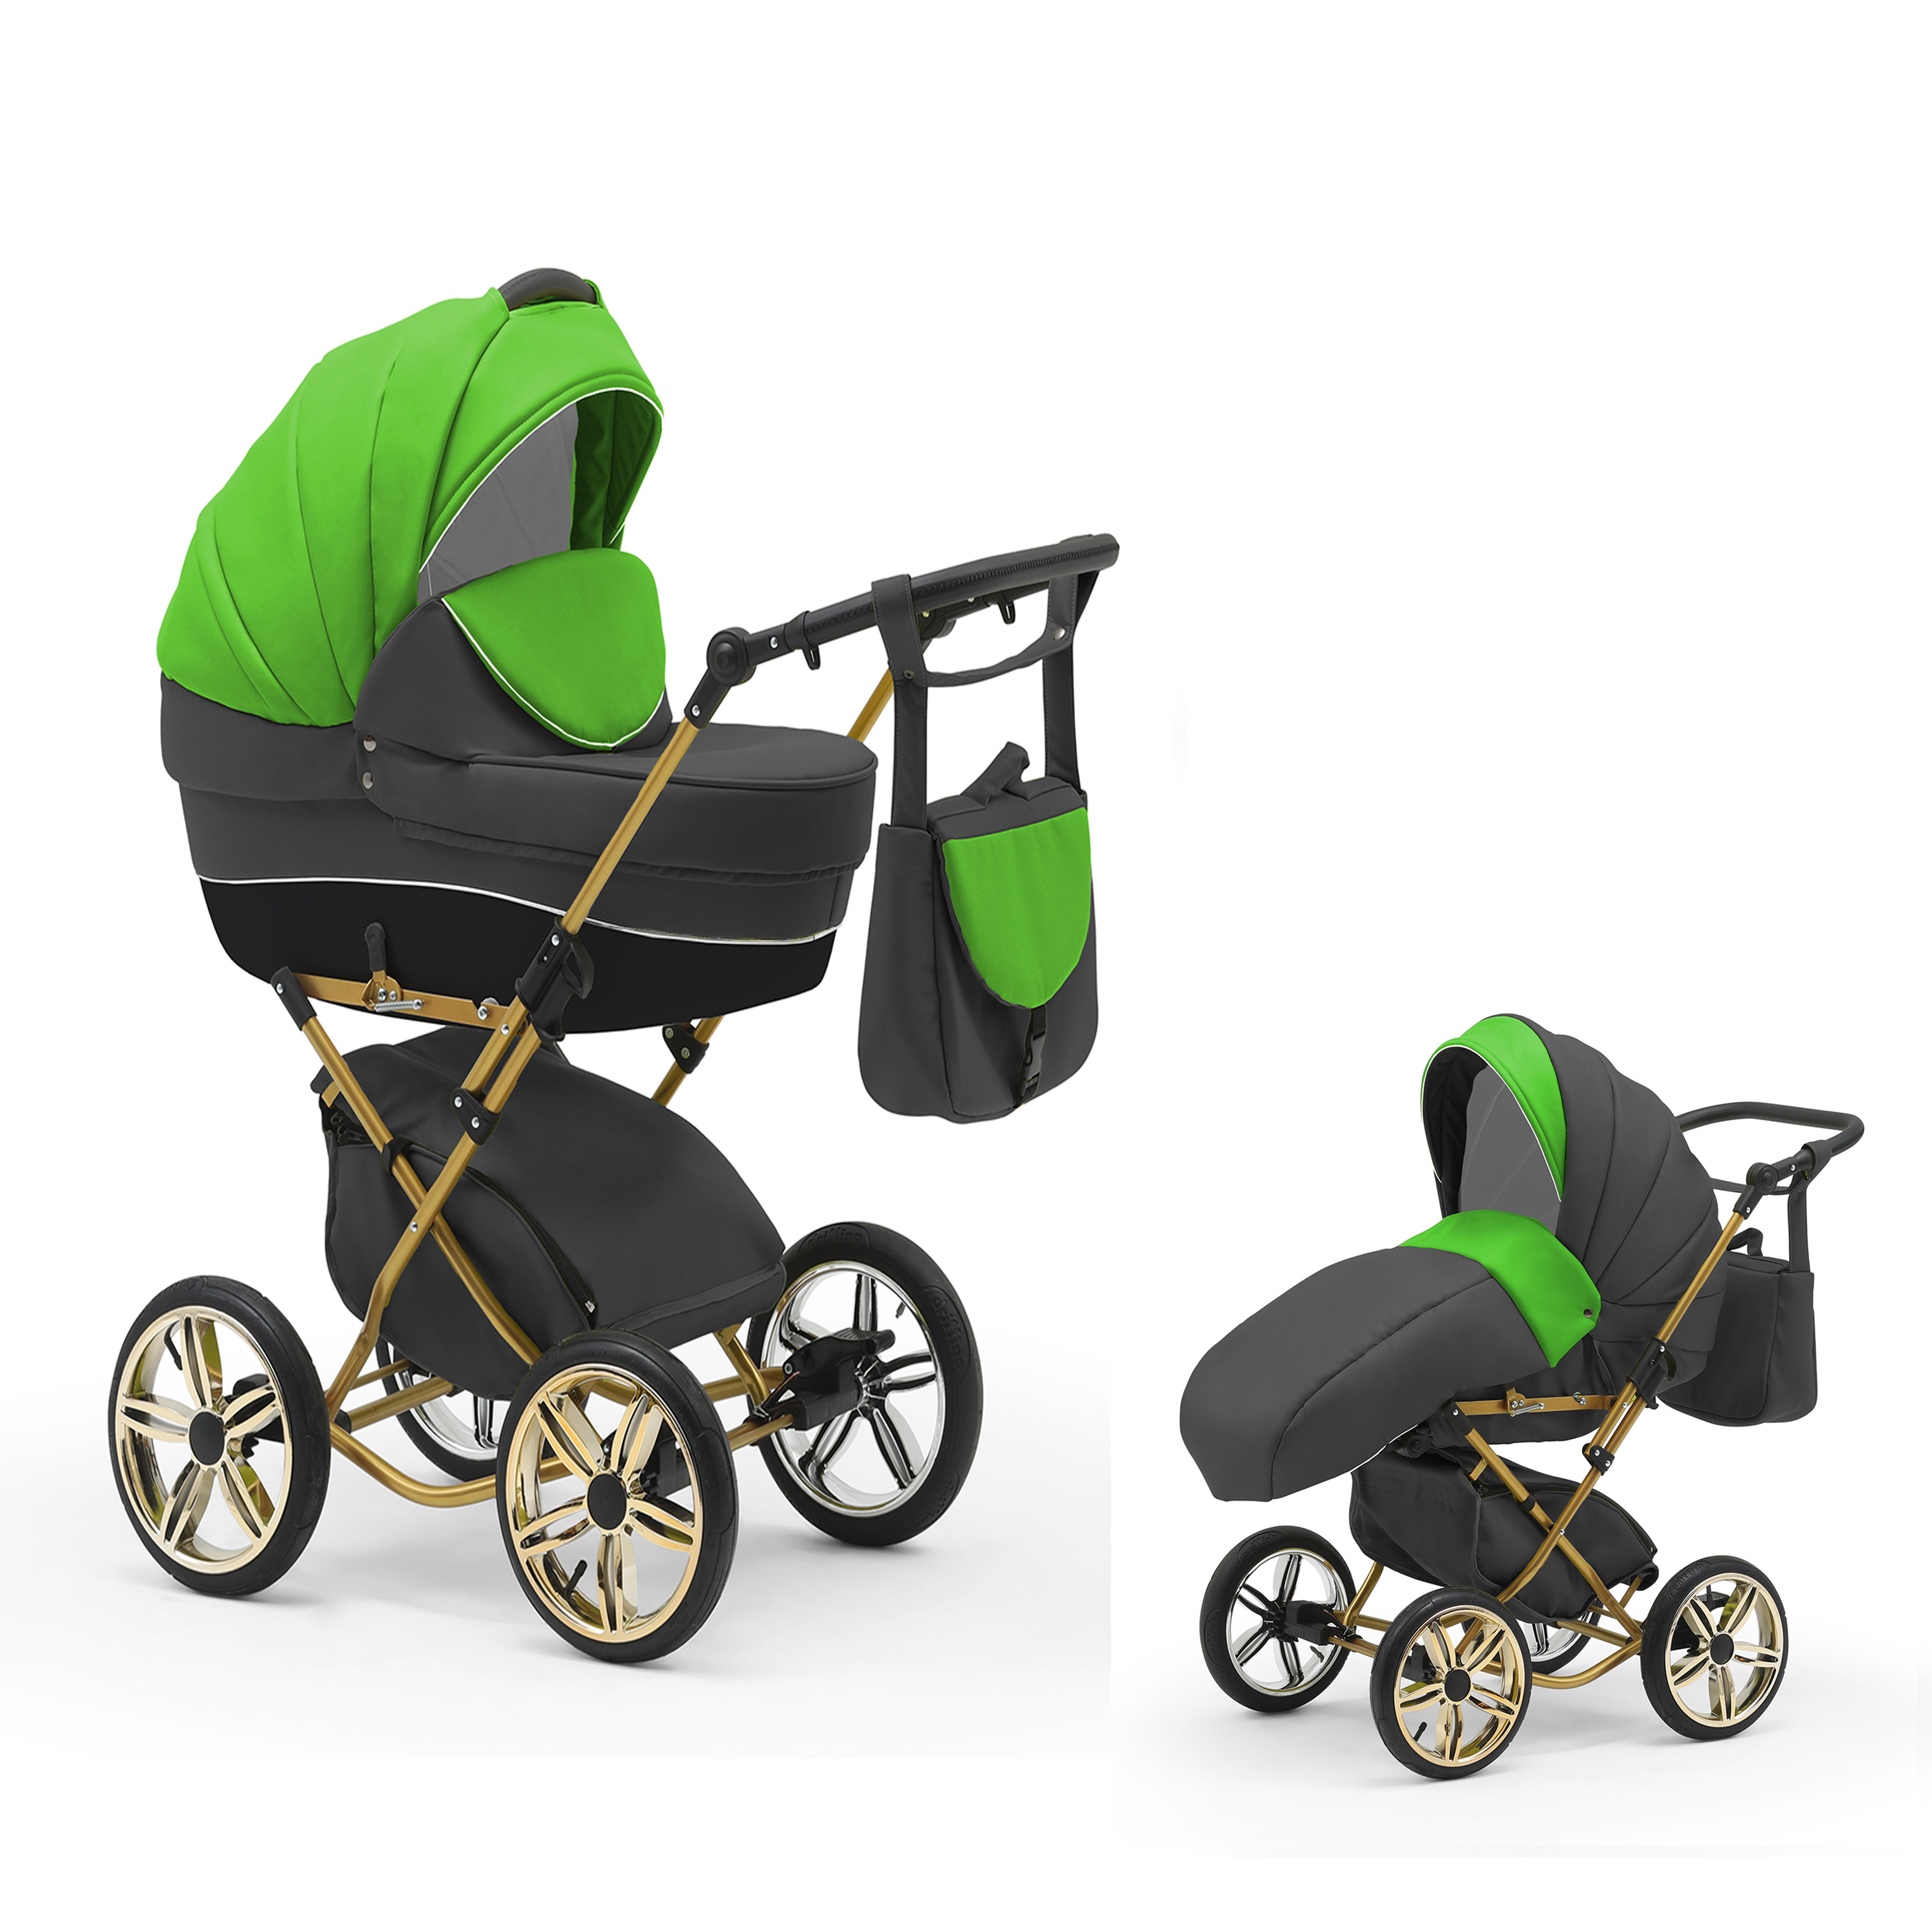 babies-on-wheels Kombi-Kinderwagen Jahre in bis 30 - in von 1 Sorento 11 2 Designs Geburt 4 - Grün-Grau-Schwarz Teile